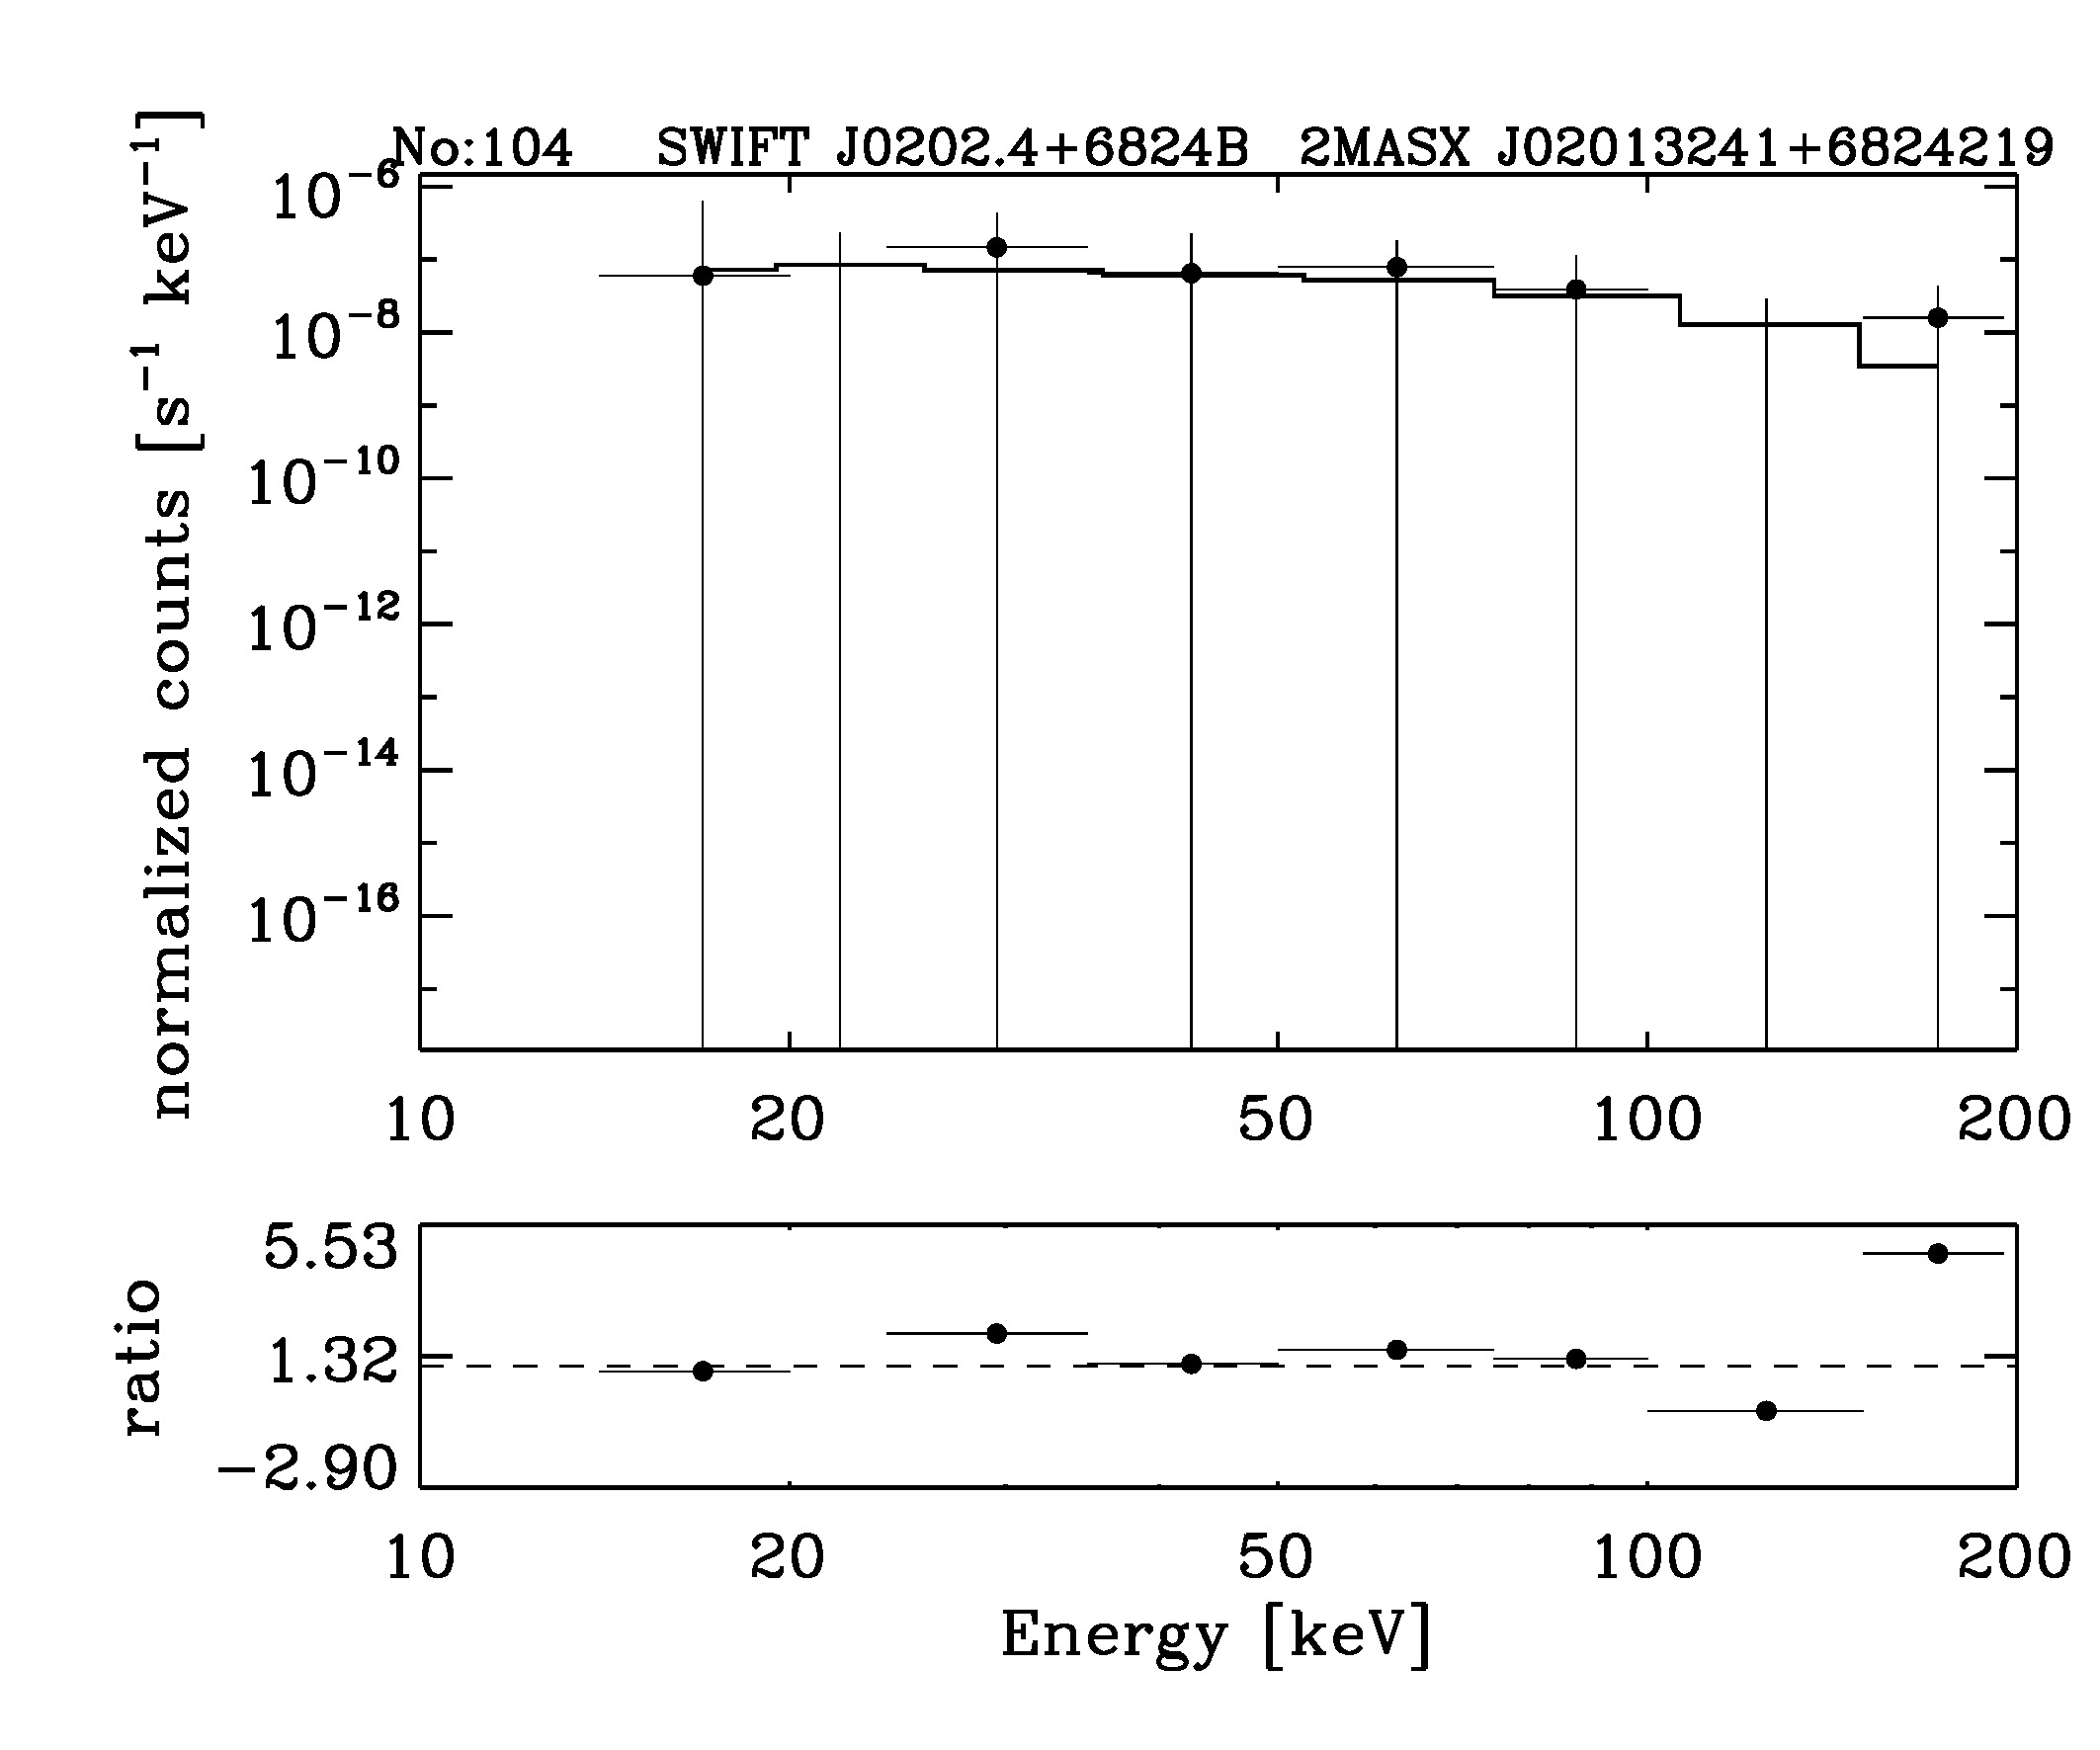 BAT Spectrum for SWIFT J0202.4+6824B